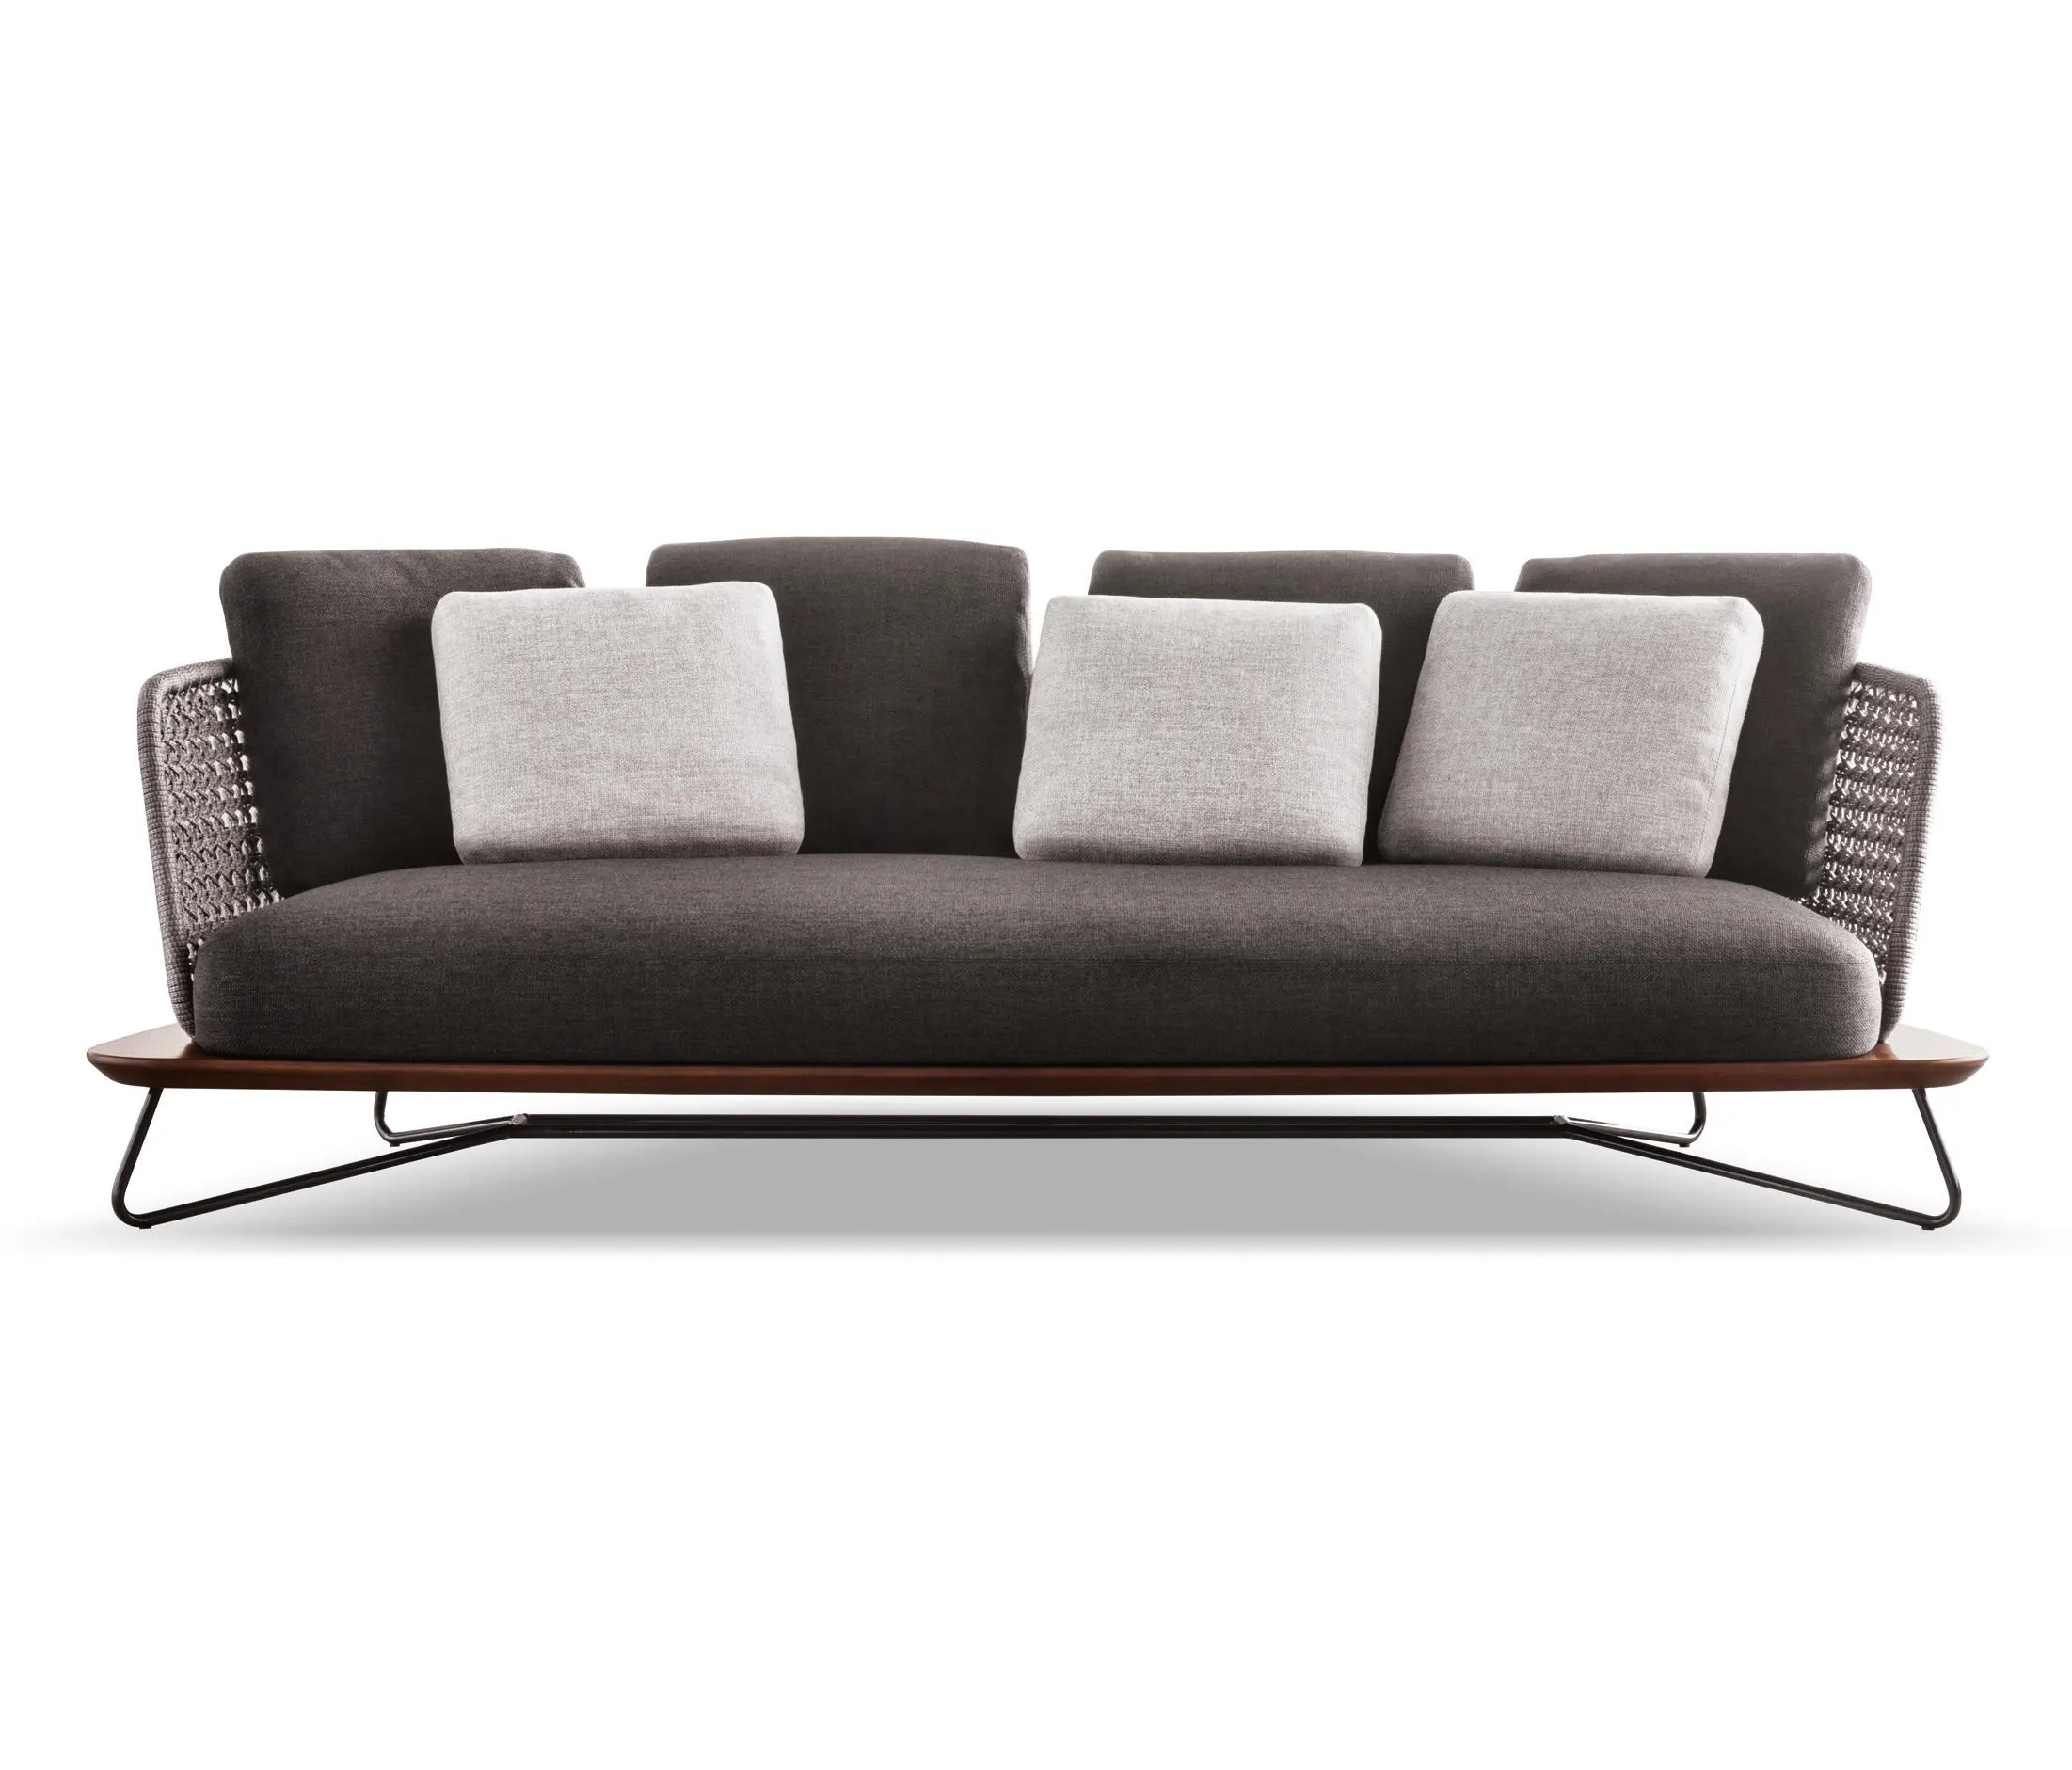 Luxury Rope Merbau 3 Seat Er Long Sofa Outdoor/Indoor Leisure Modern Sofa Chair